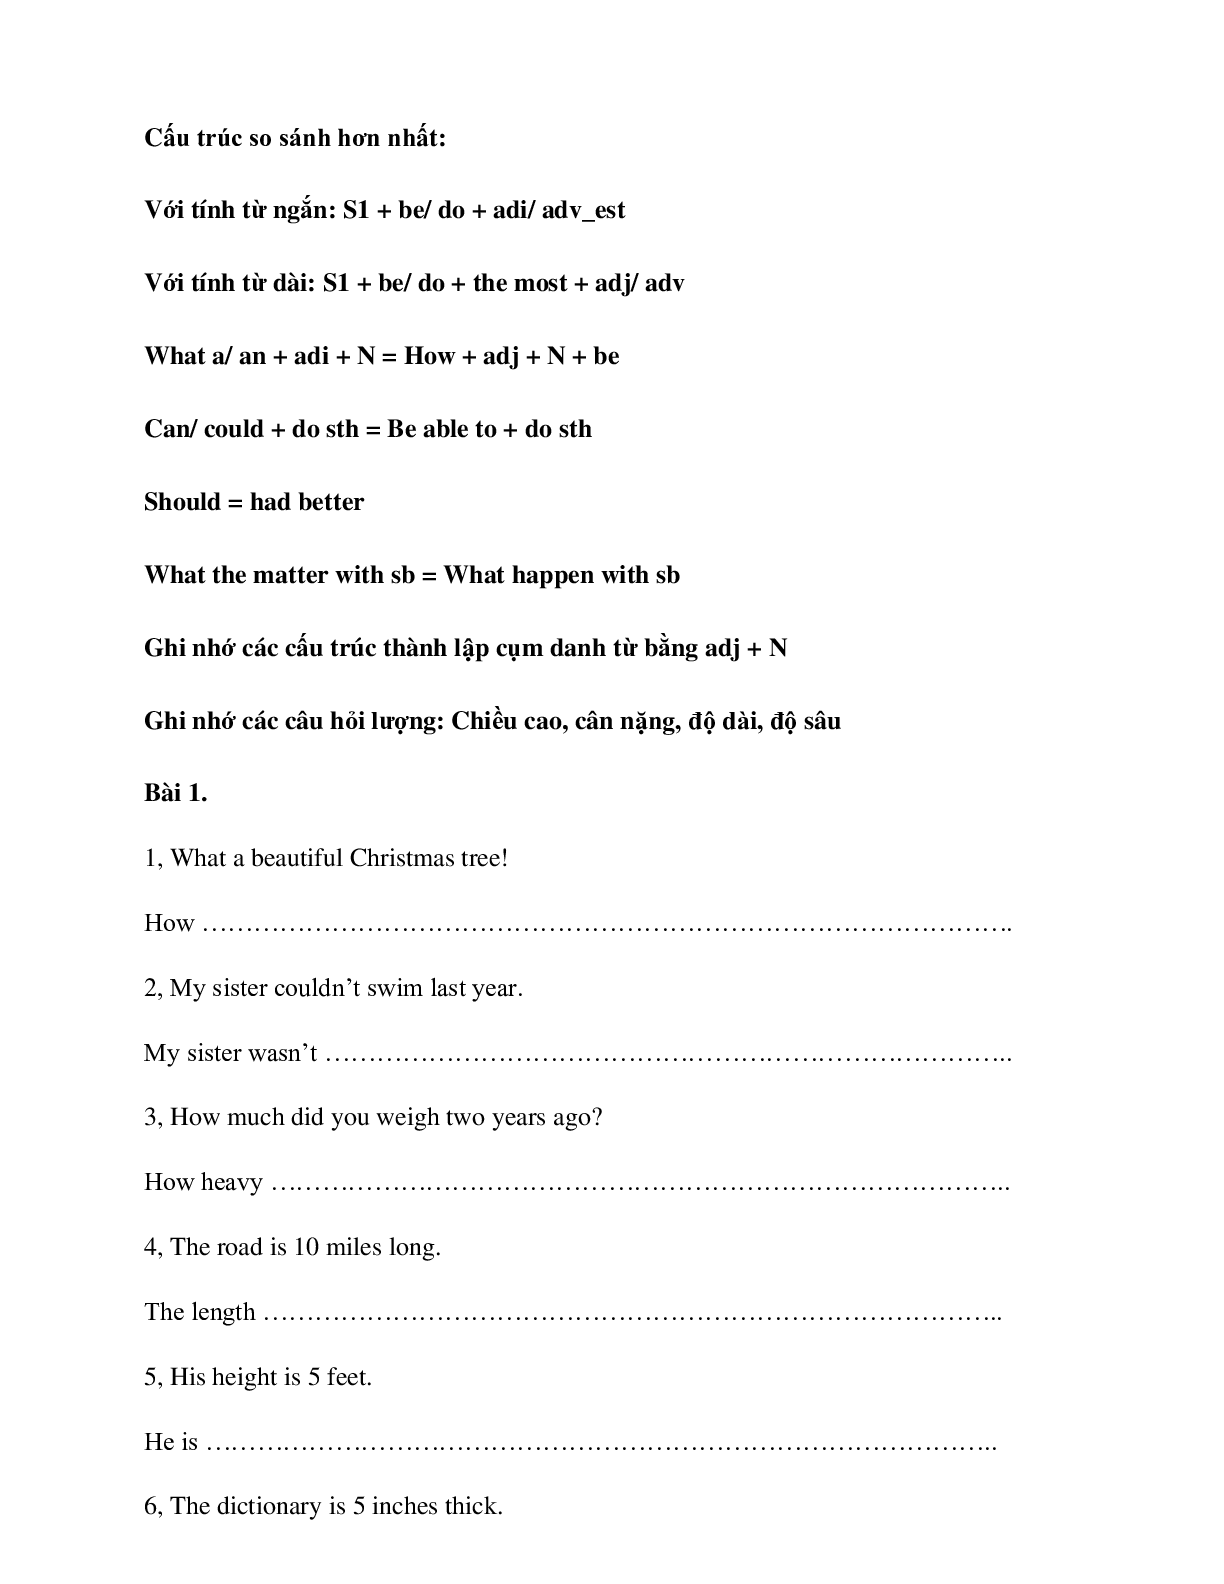 Chuyên đề Viết lại câu môn Tiếng Anh lớp 7 (trang 2)